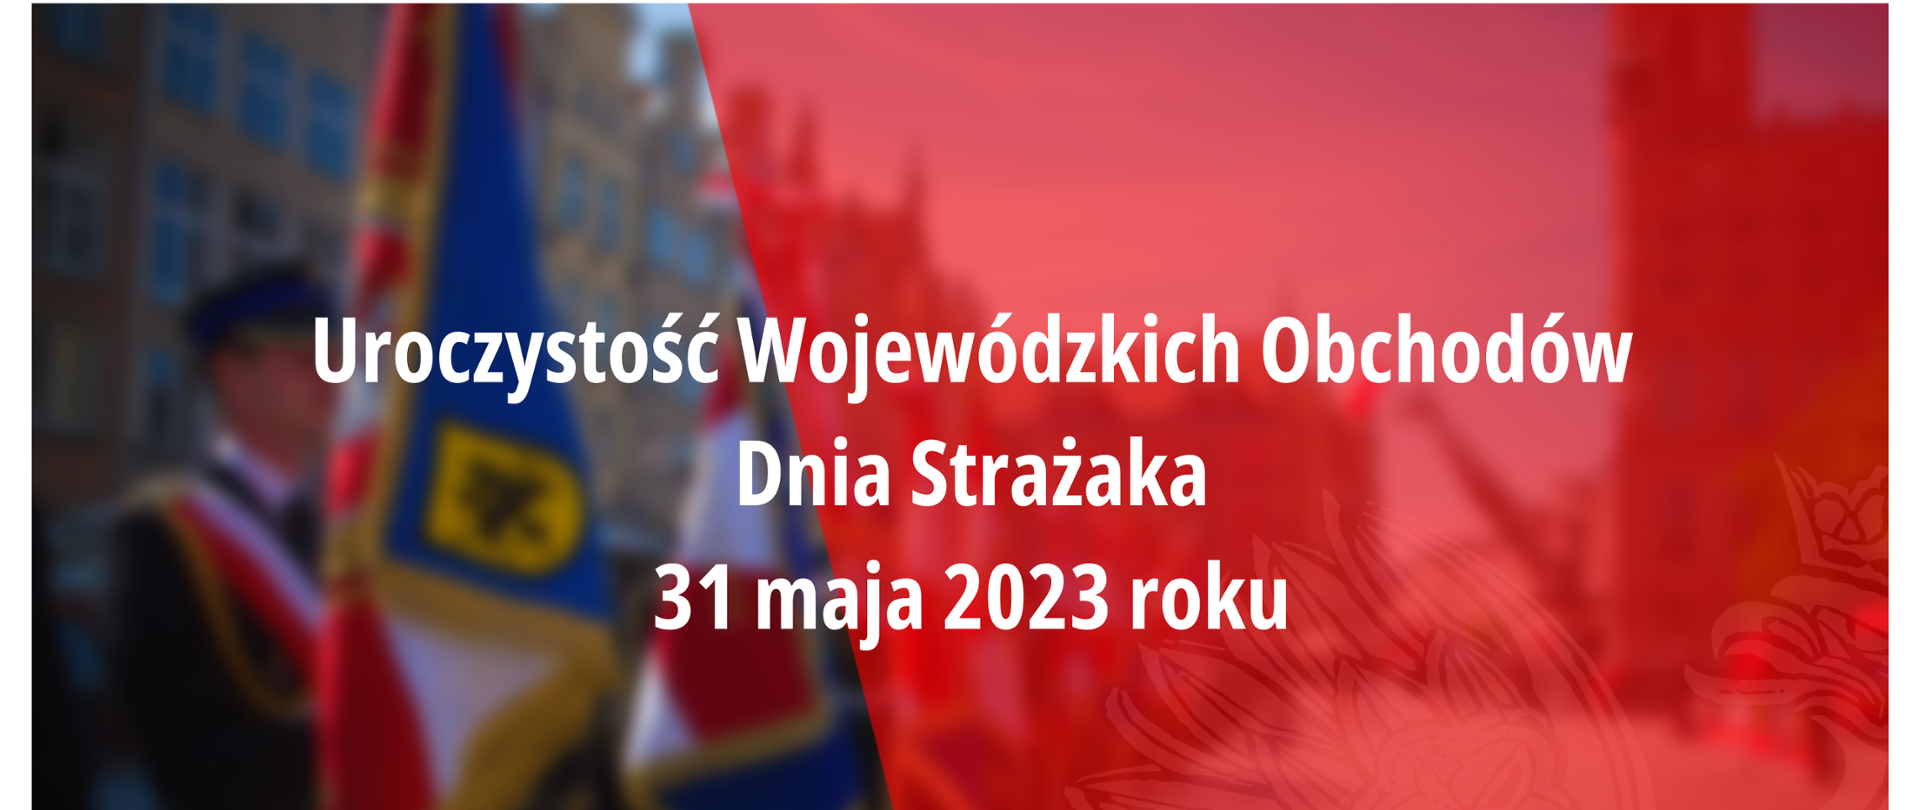 Uroczystość Wojewódzkich Obchodów Dnia Strażaka 31 maja 2023 roku.